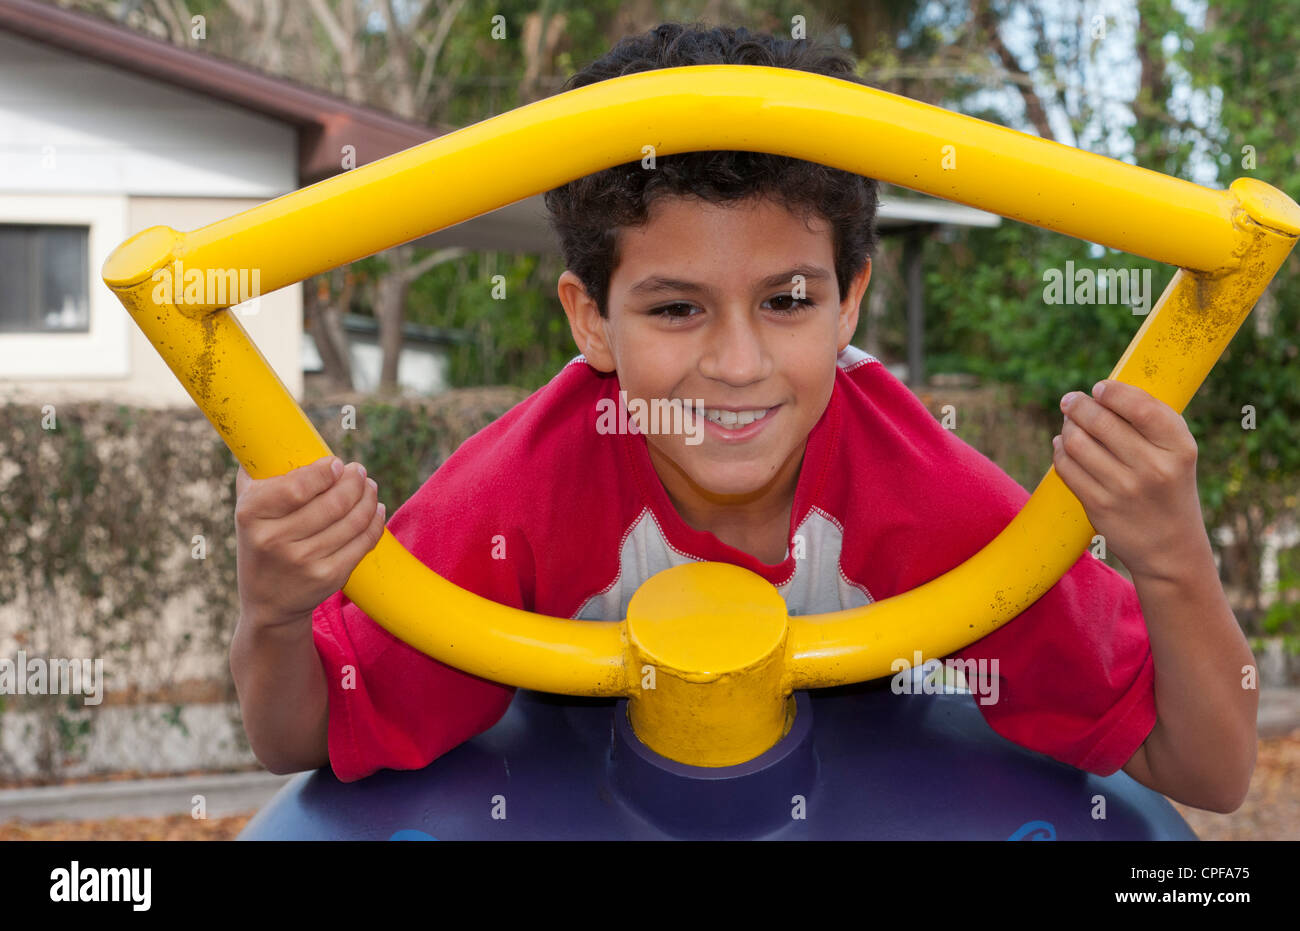 Spanische jungen im Alter von 11 spielen auf Spielplatz auf Ausrüstung Porträt im Park mit bunten Spaß Stockfoto